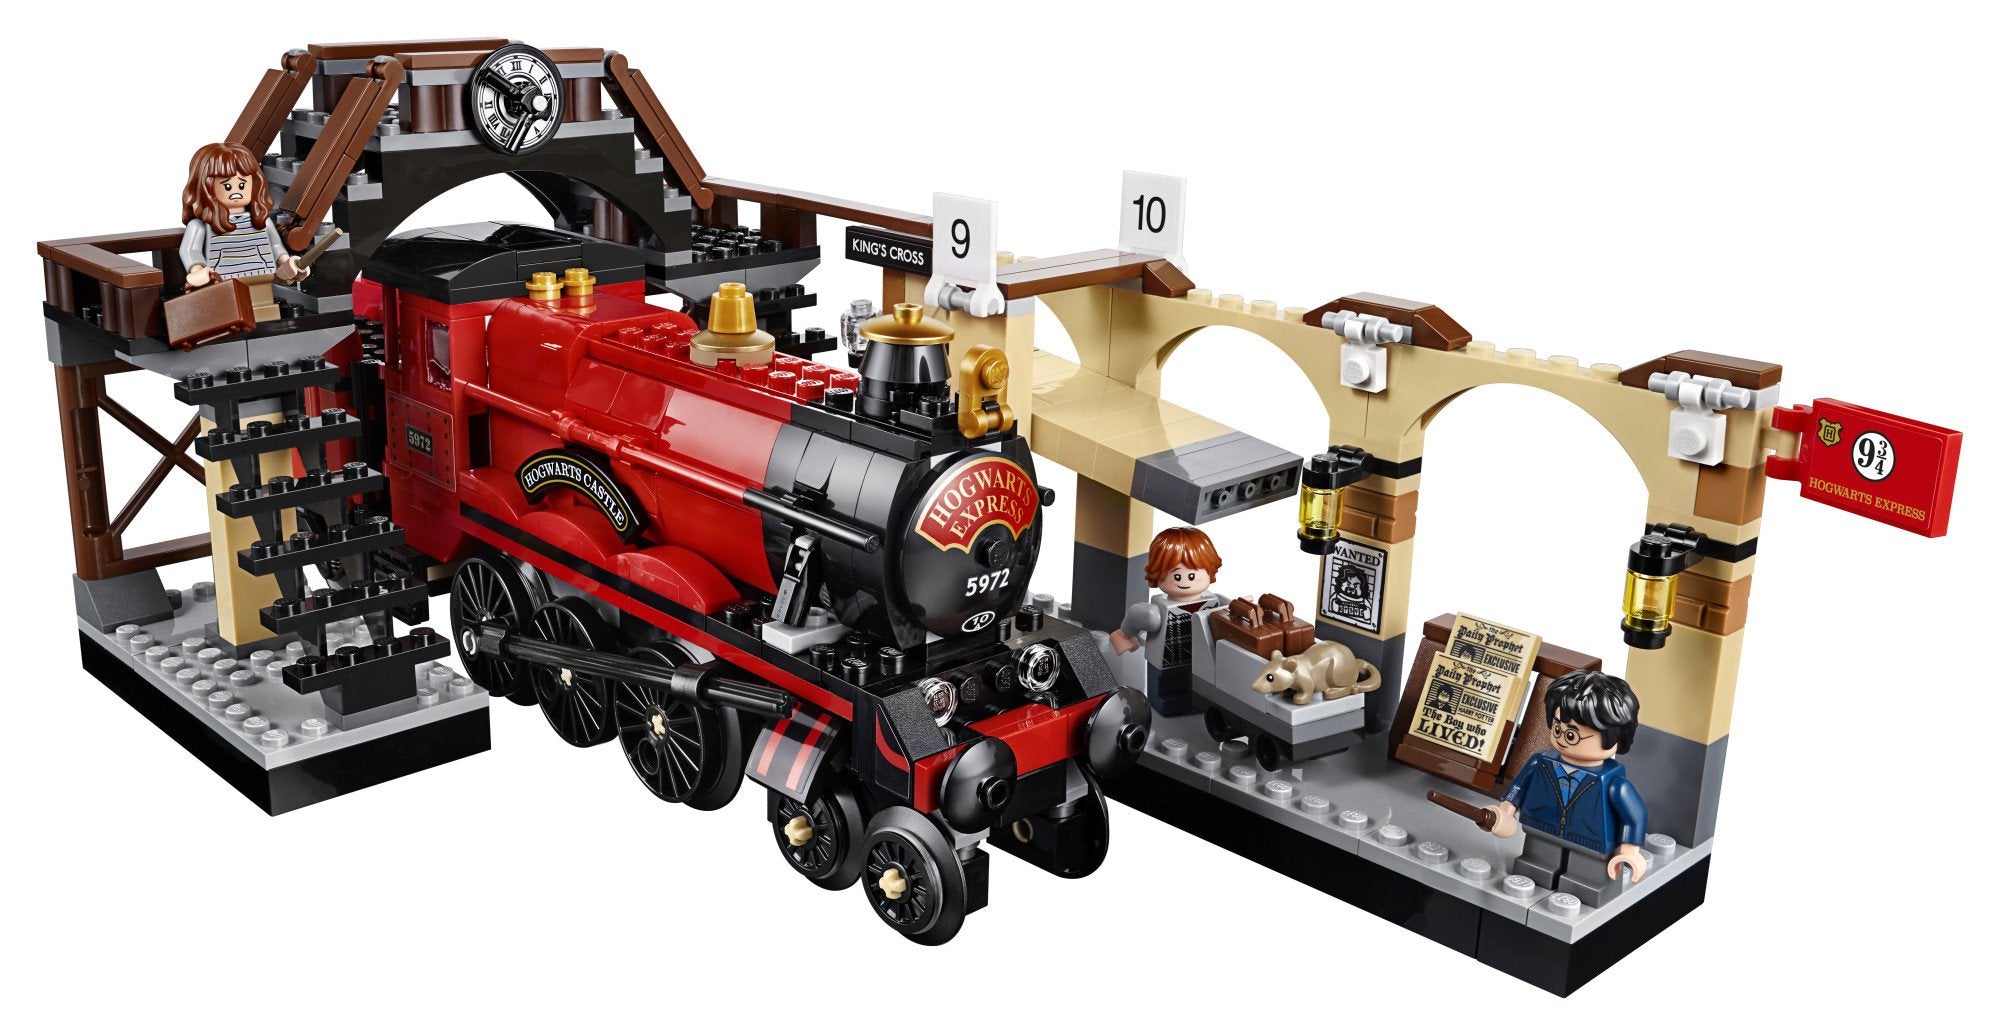 New LEGO Harry Potter Hogwarts Express set revealed along with